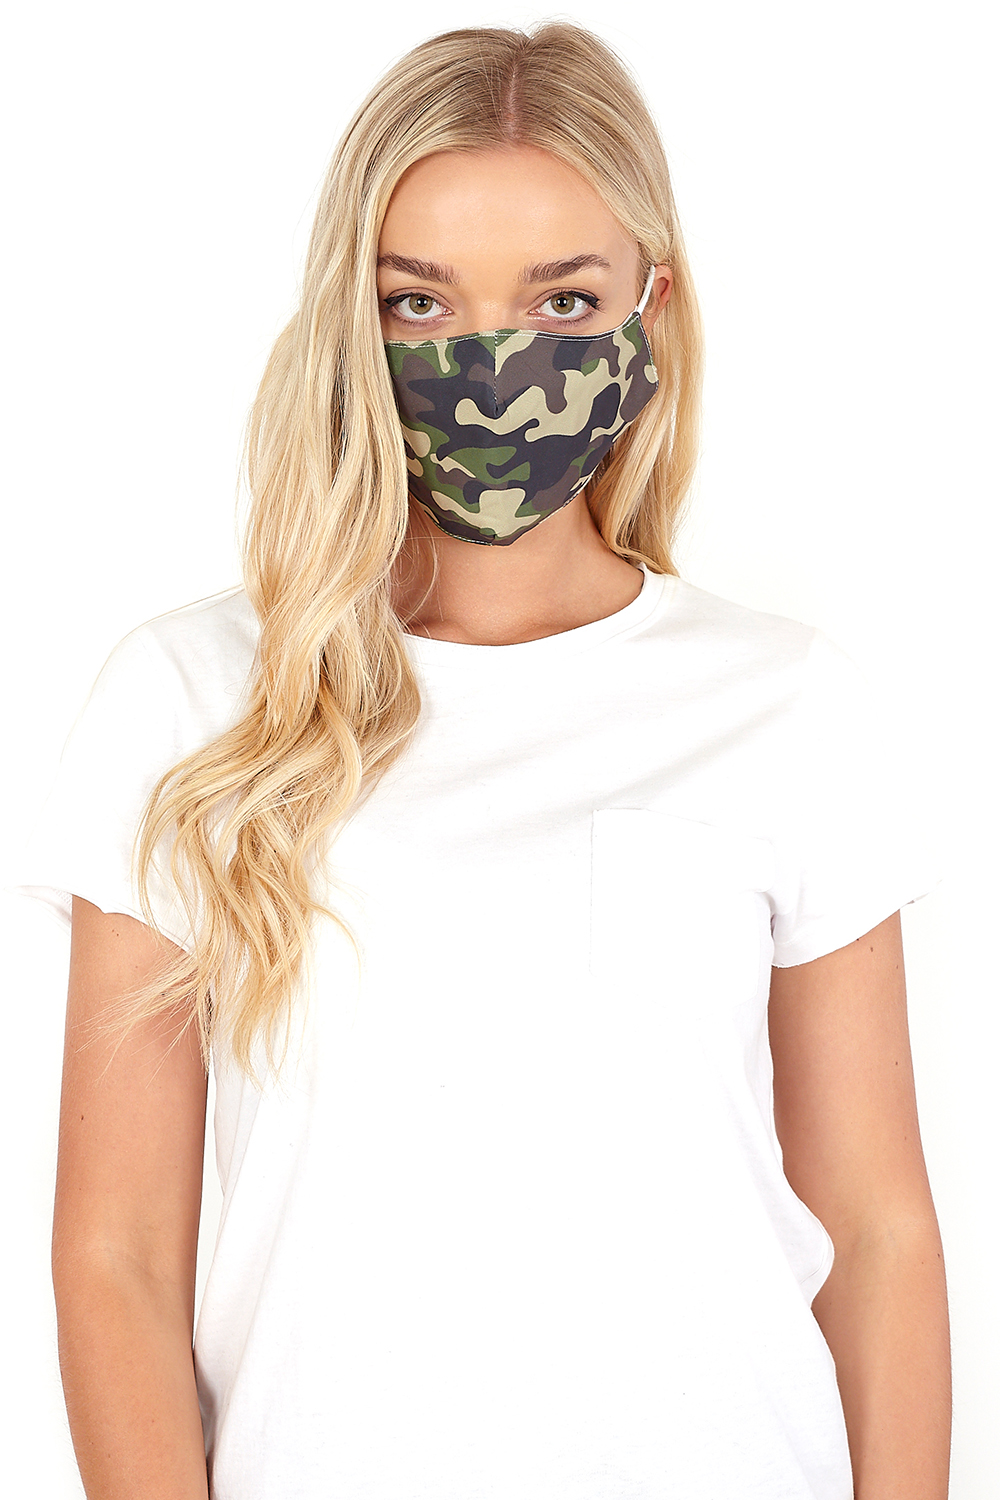 KHAKI Camouflage Print Fast Drying Fashion Face Mask, Image 2 of 2